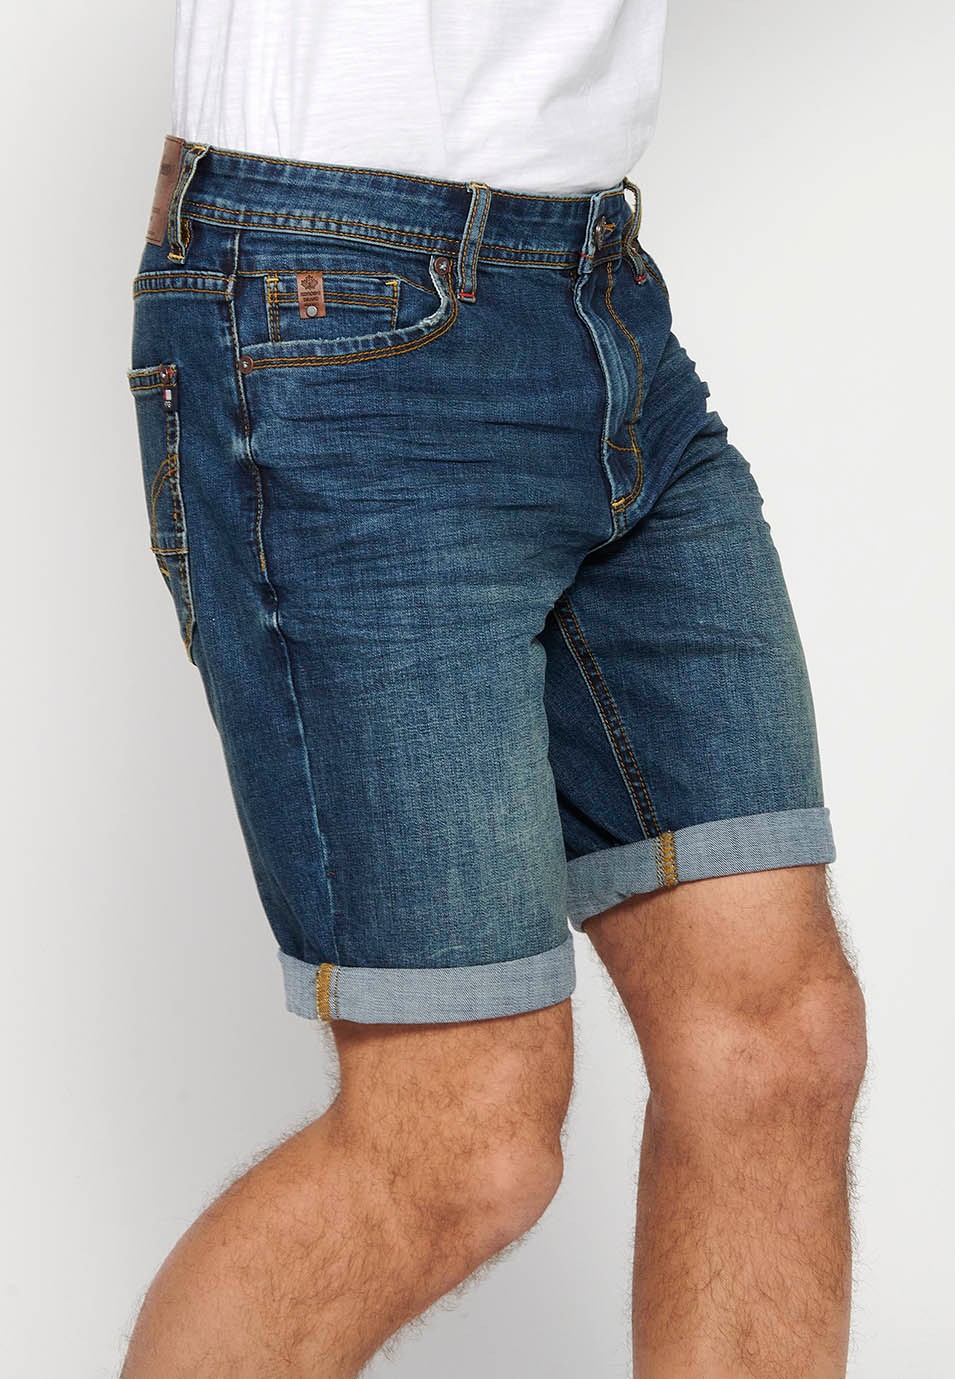 Bermuda-Jeansshorts mit Reißverschluss und Knopfverschluss vorne und fünf Taschen, eine blaue Tasche für Herren 4